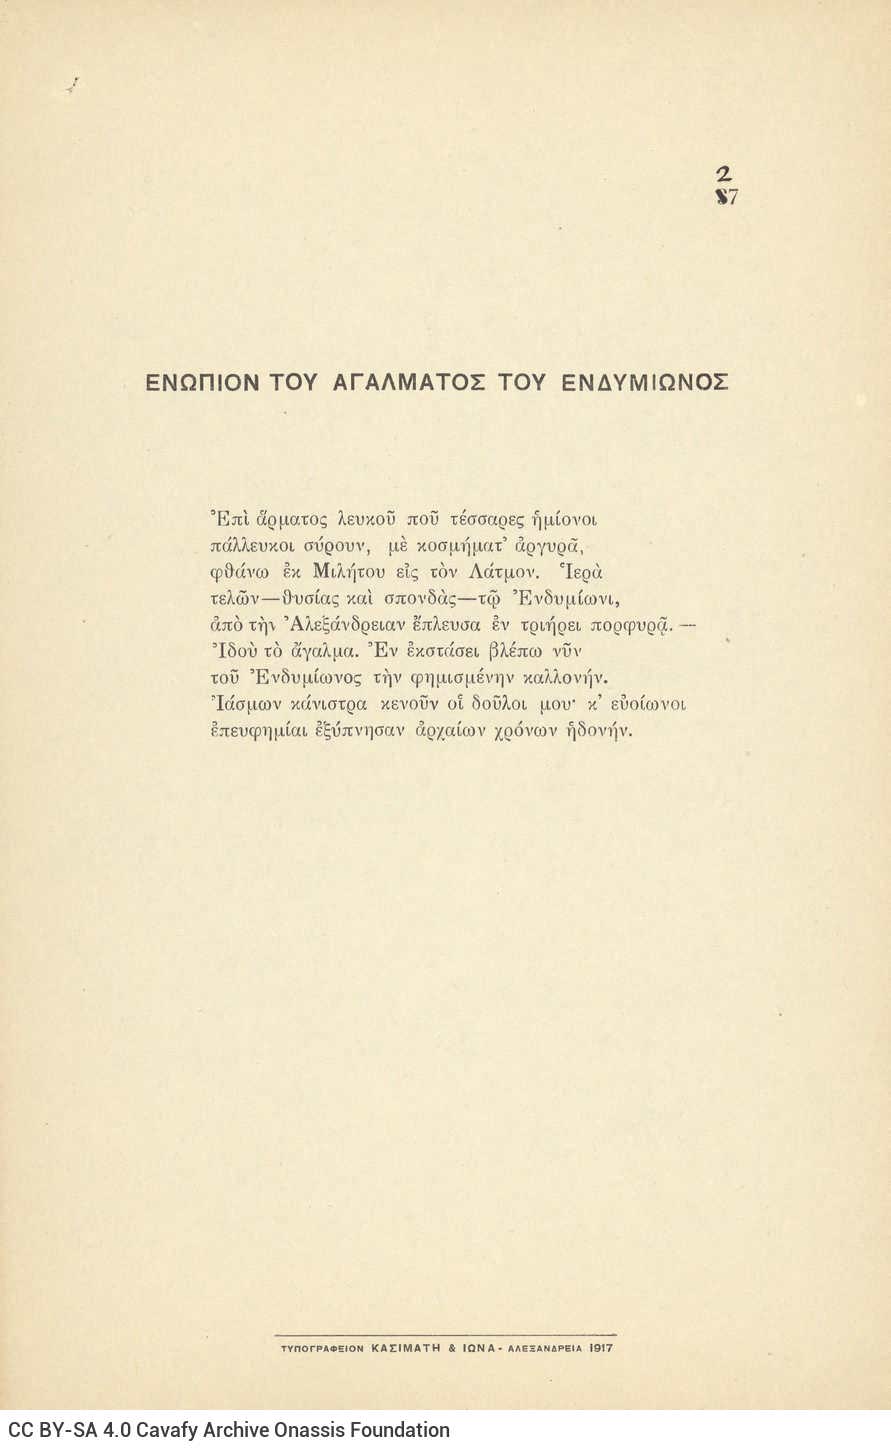 Ποιητική Συλλογή του Καβάφη με 57 ποιήματα της περιόδου 1912-1920. Χαρτόν�